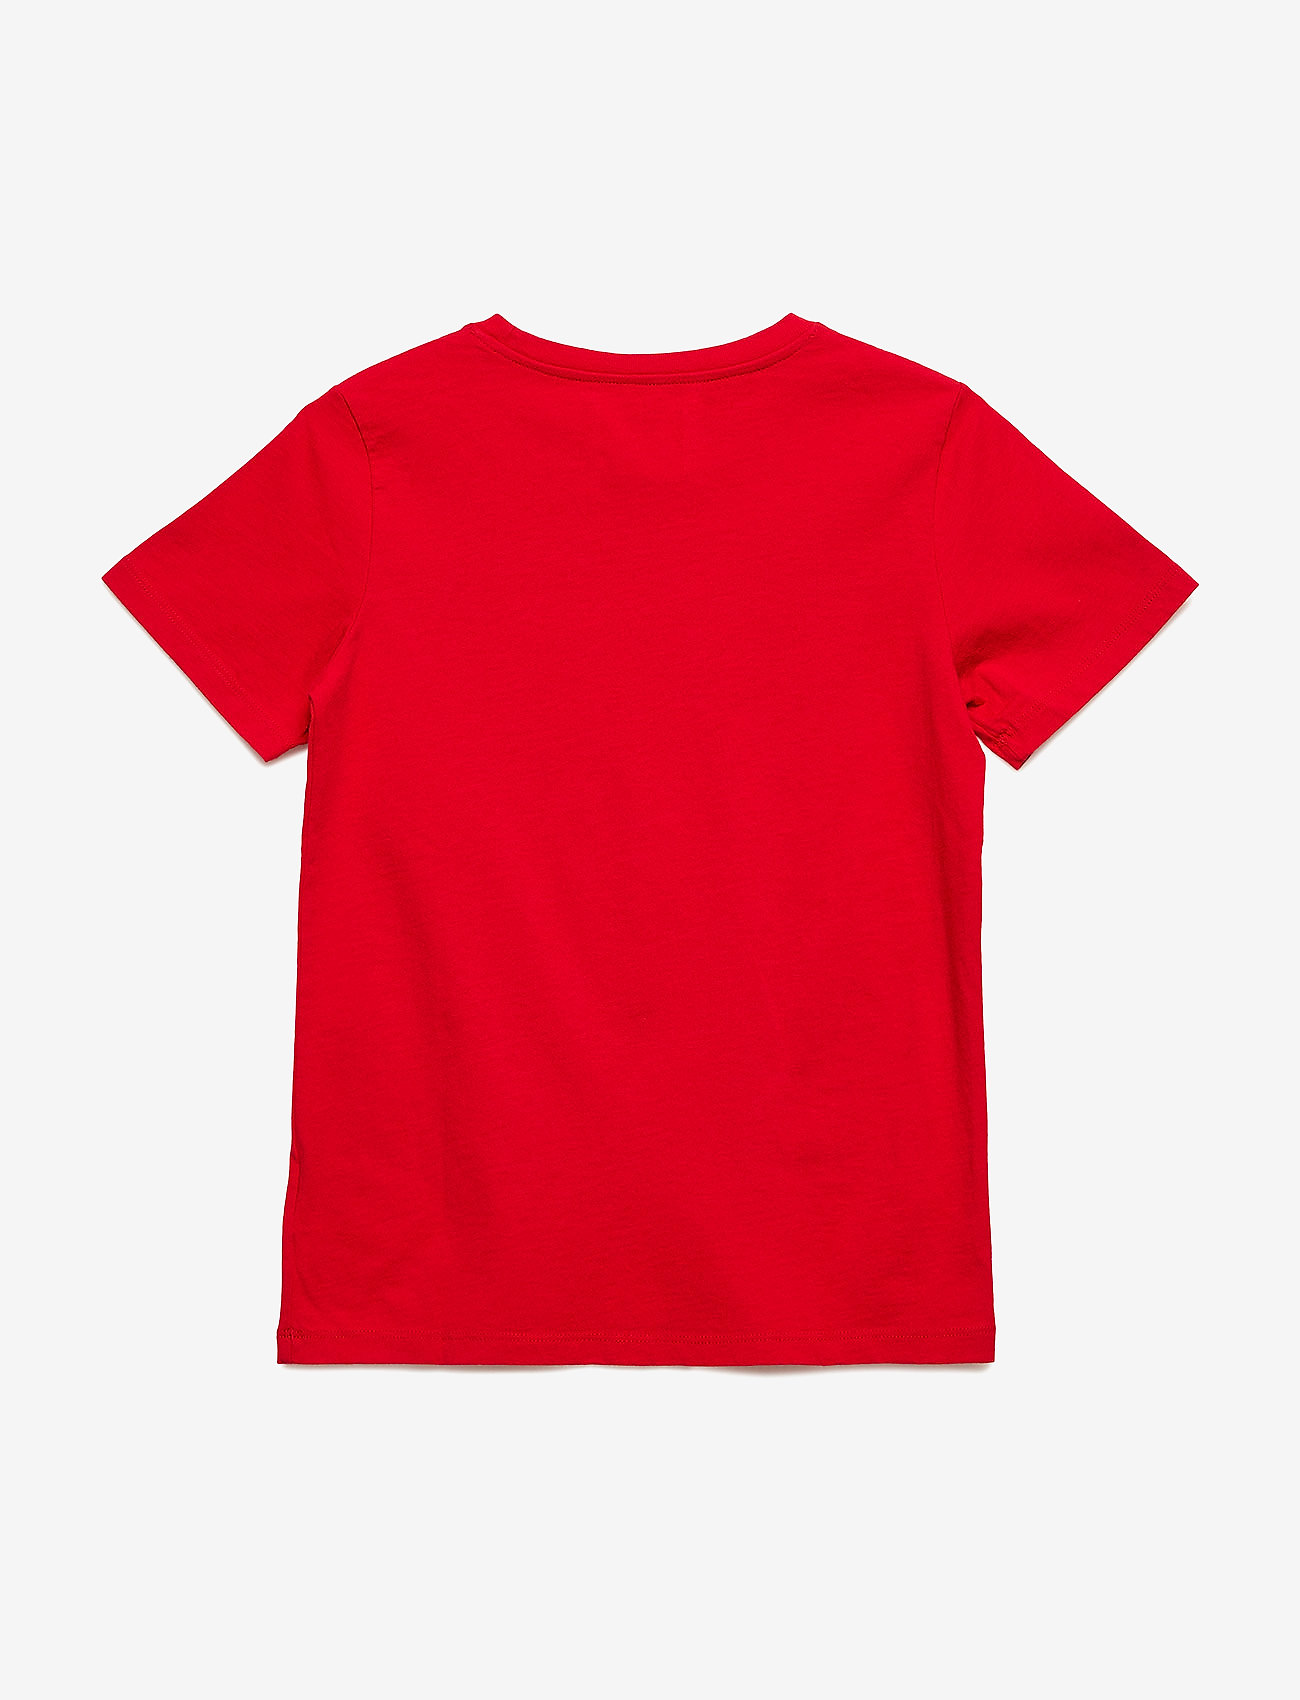 Wood Wood - Ola kids T-shirt GOTS - red - 1